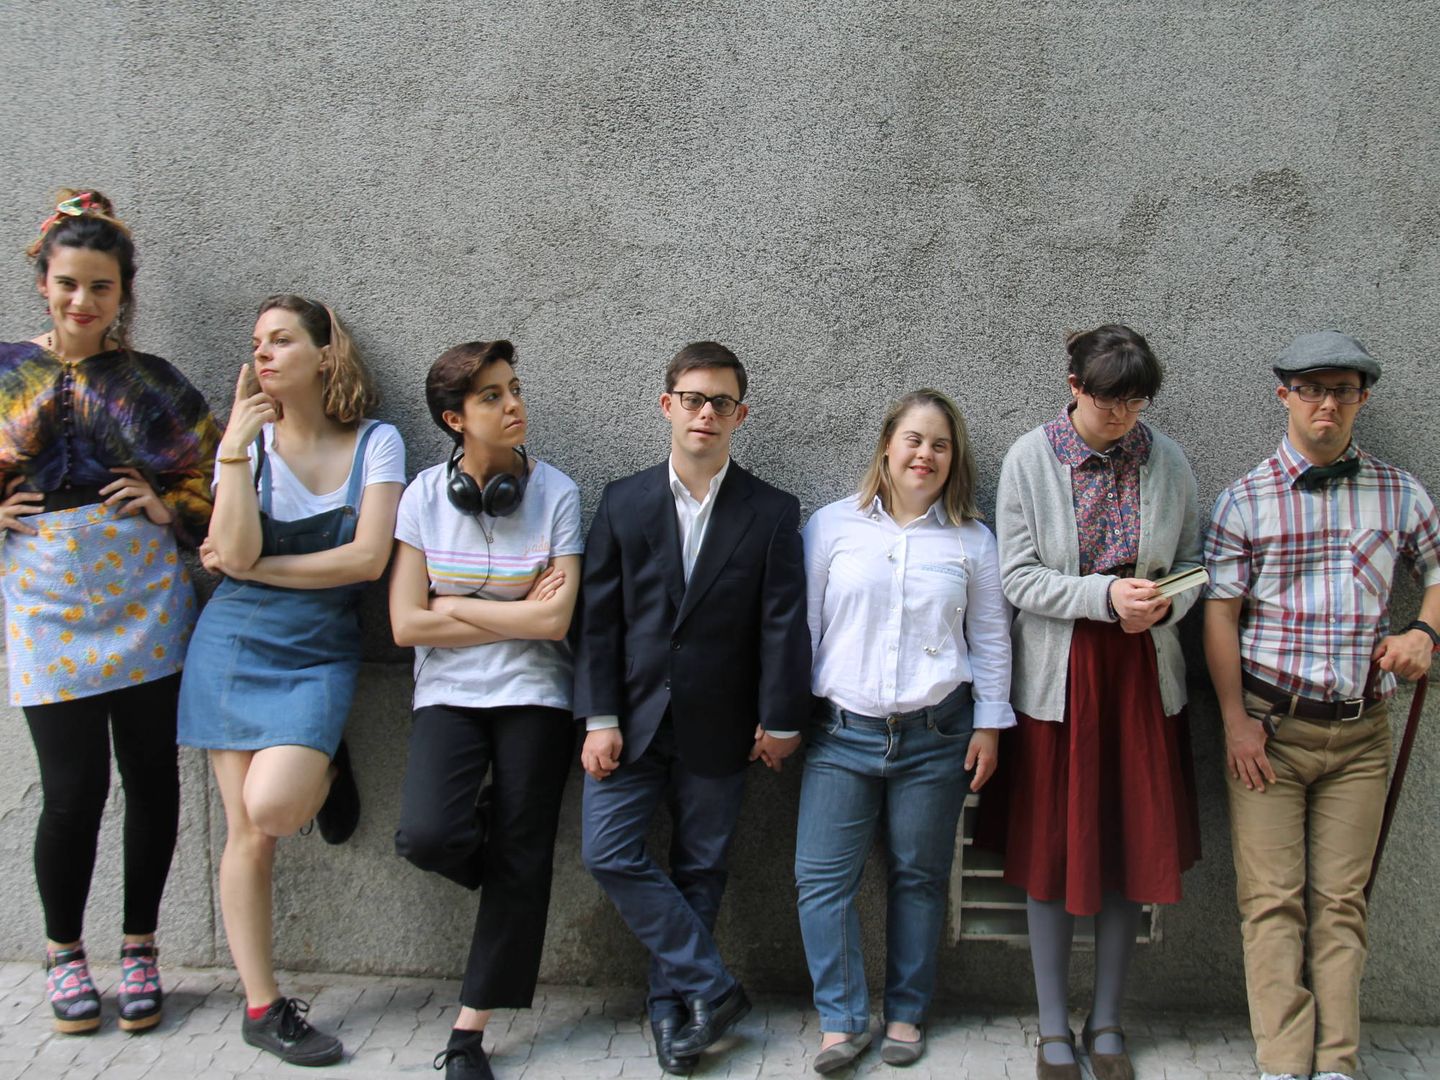 De izquierda a derecha Mayssa Tasaky, Sofía Novoa, Mónica Ruíz, Pepe Fradejas, Mar Vázquez, Ana Beceiro y Guillermo López. (Down Madrid)